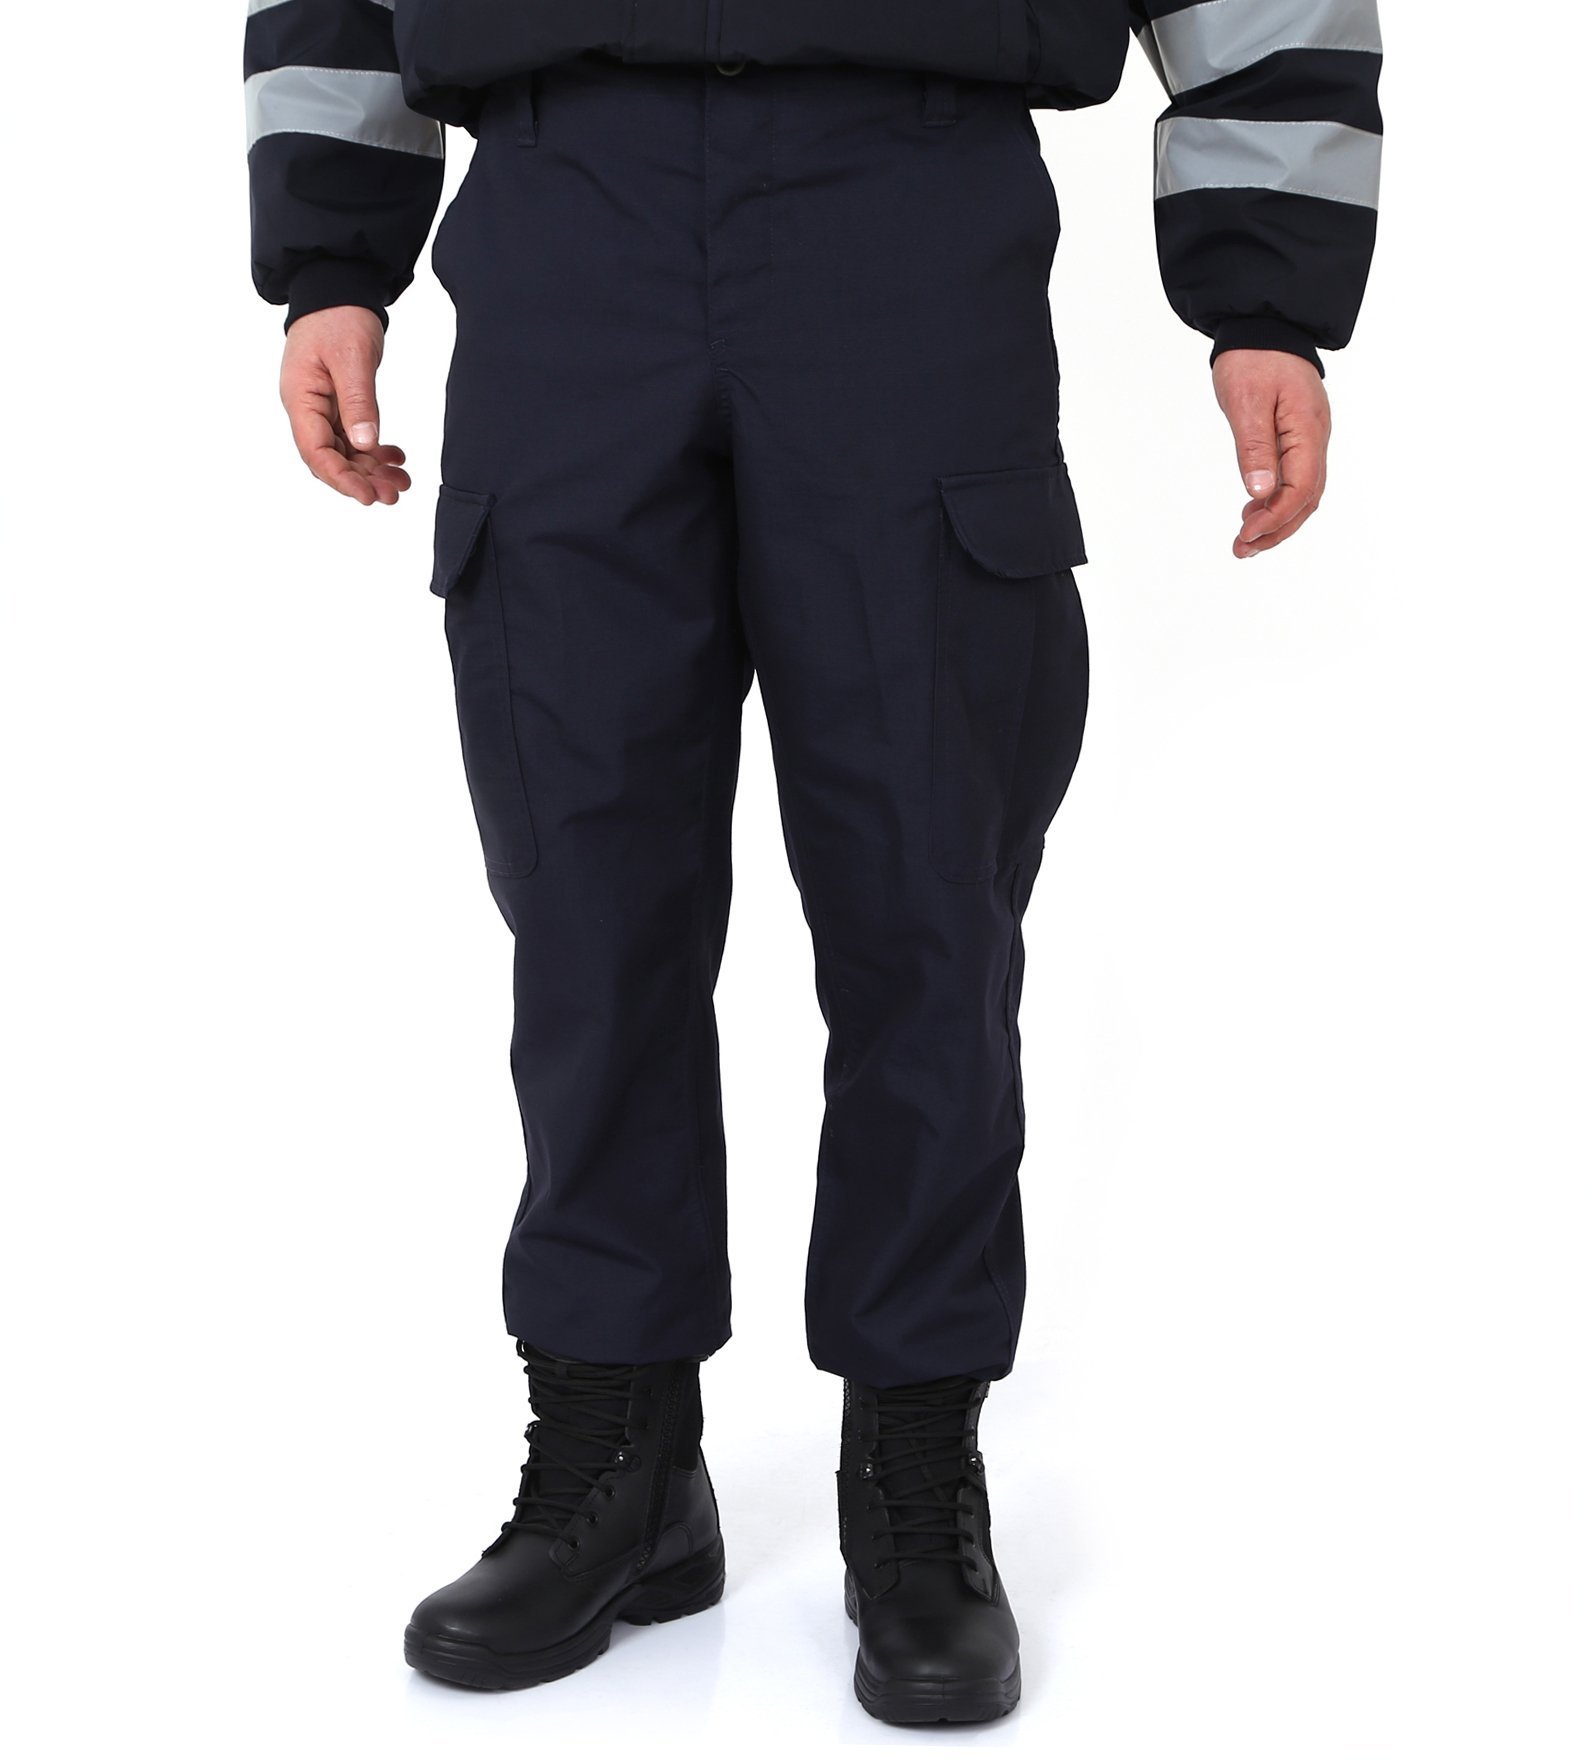 Jandarma Asayiş Orjinal Pantolon , jandarma asayiş pantolon